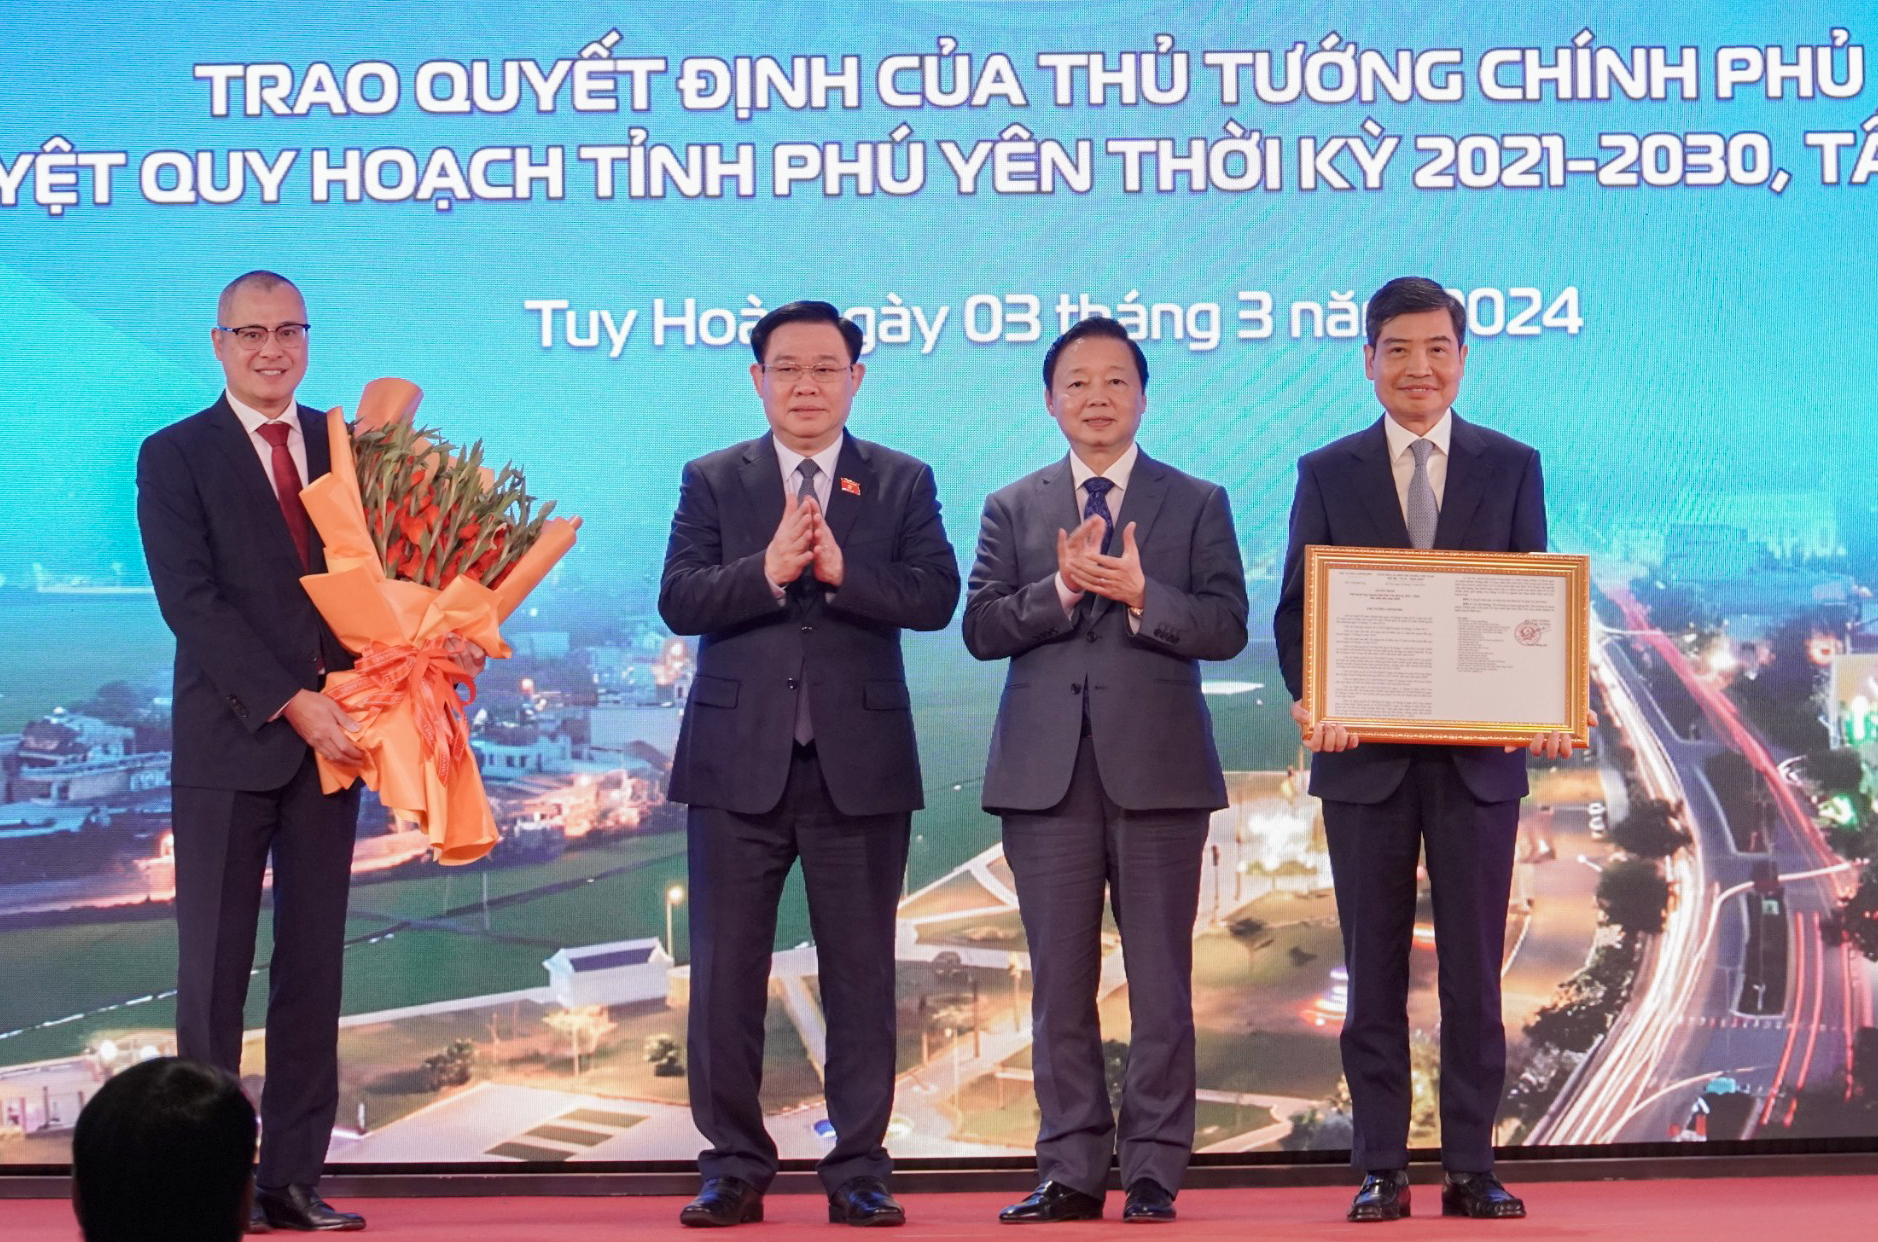 Phó Thủ tướng Trần Hồng Hà: Thực hiện cho được mục tiêu một Phú Yên xanh, giàu mạnh và giàu bản sắc